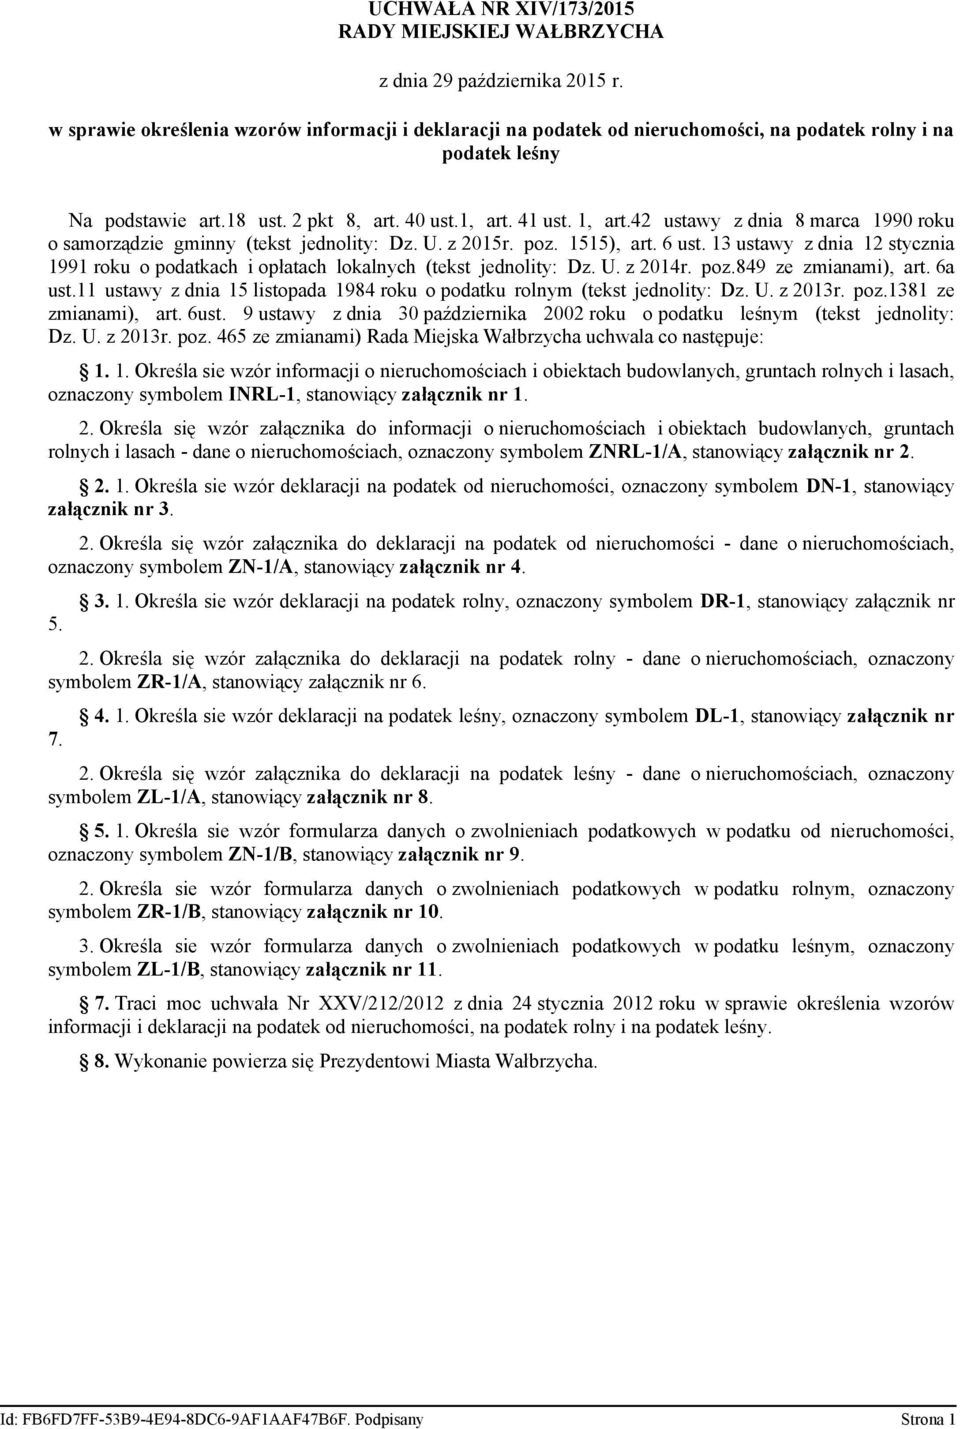 42 ustawy z dnia 8 marca 1990 roku o samorządzie gminny (tekst jednolity: Dz. U. z 2015r. poz. 1515) art. 6 ust.